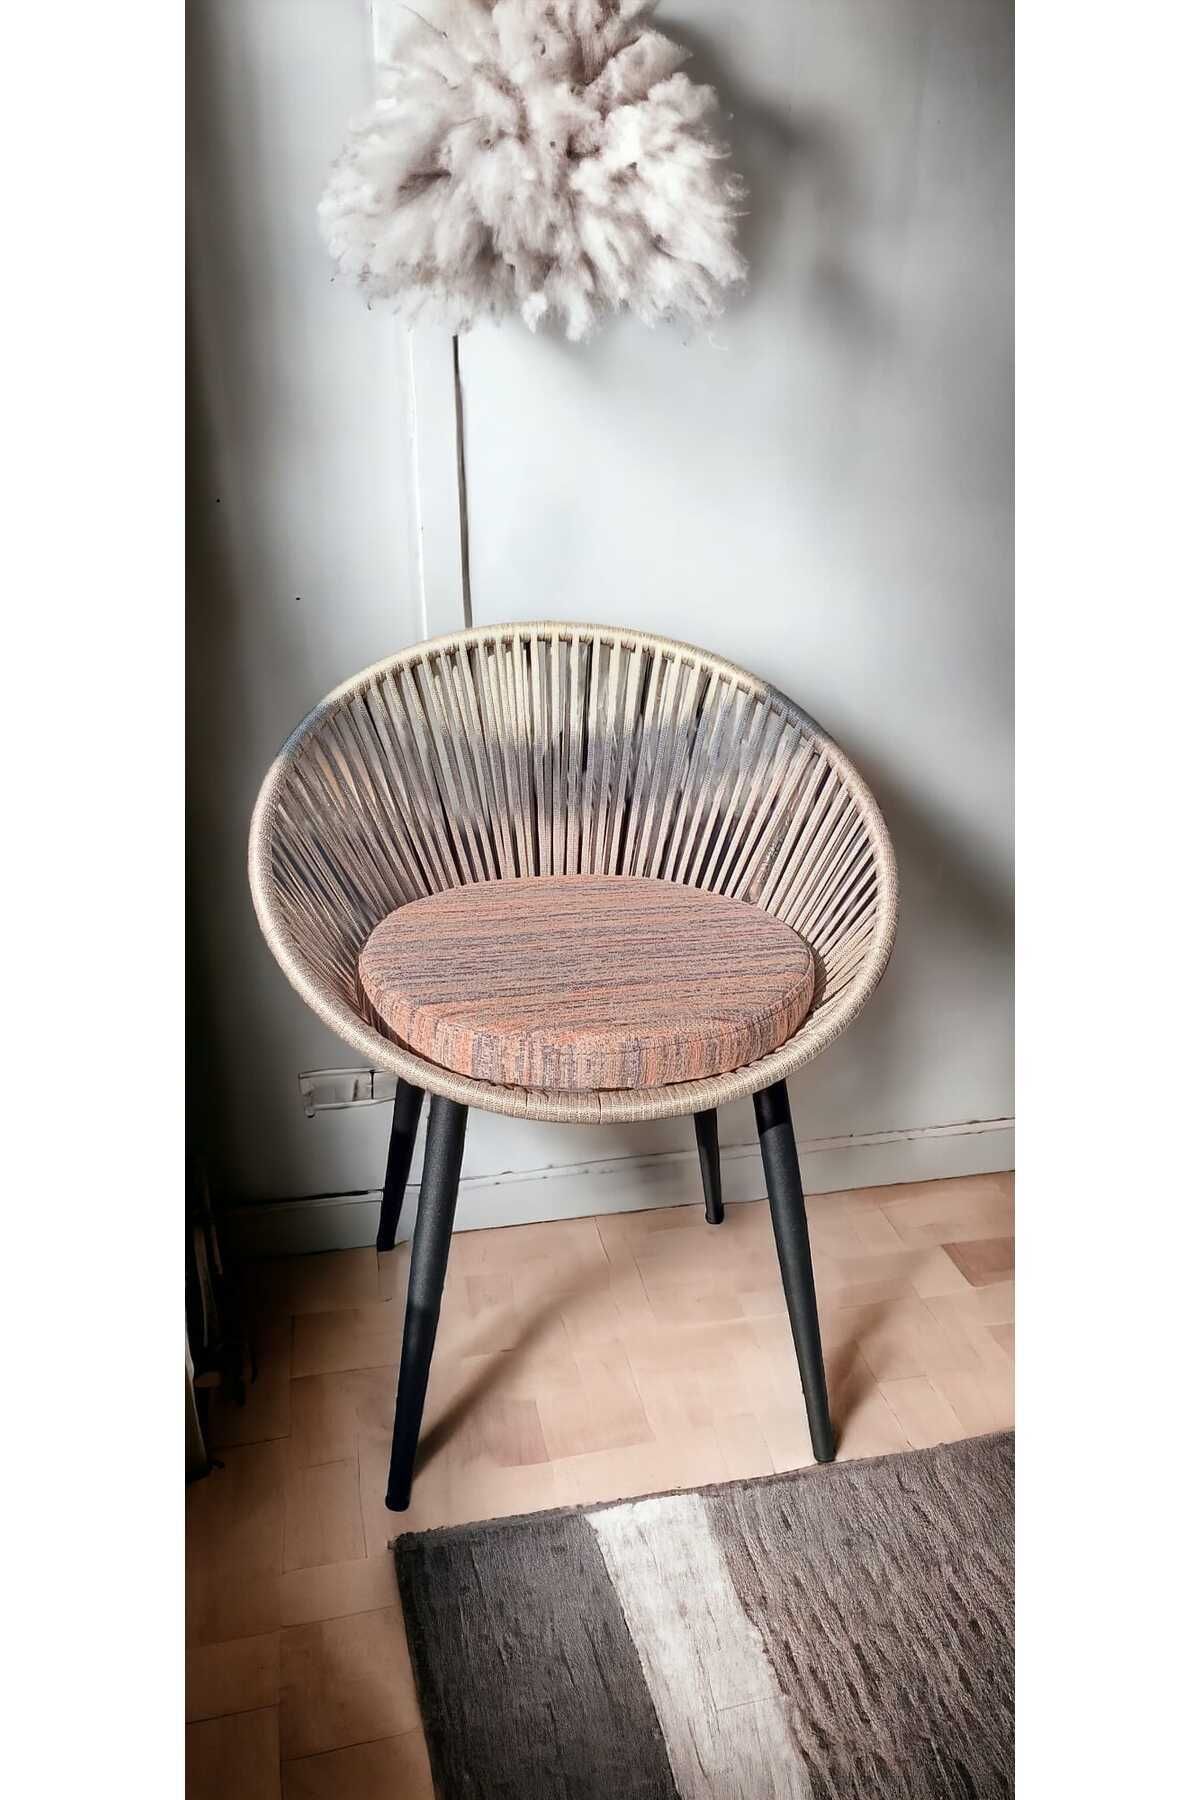 grasia home Eylo Sandalye, Metal Sandalye, Mutfak Sandalyesi, Çalışa Masası Sandalyesi, Makyaj Masası Sandalyesi